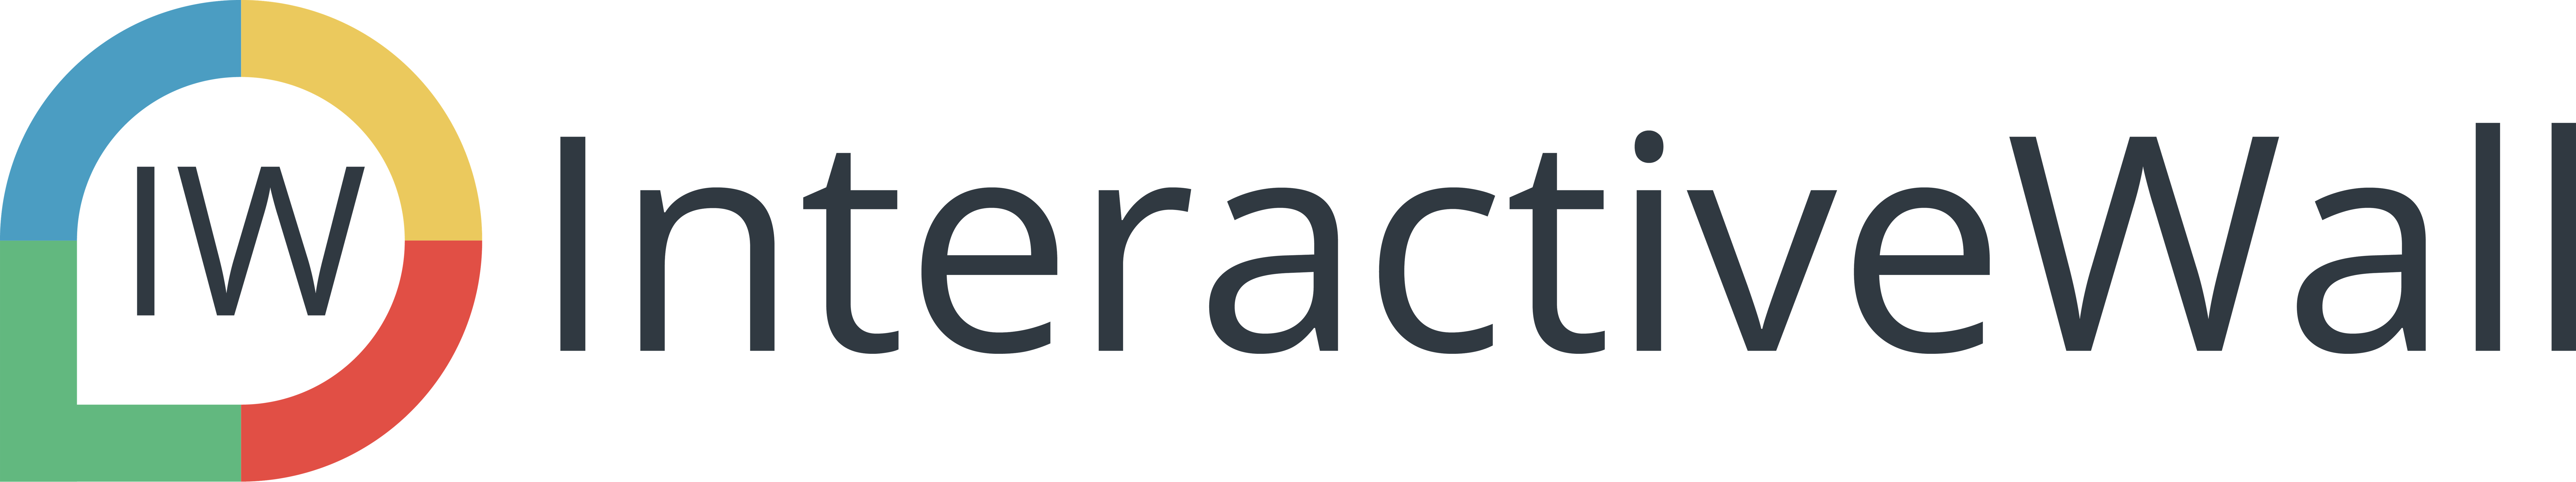 InteractiveWall Logo